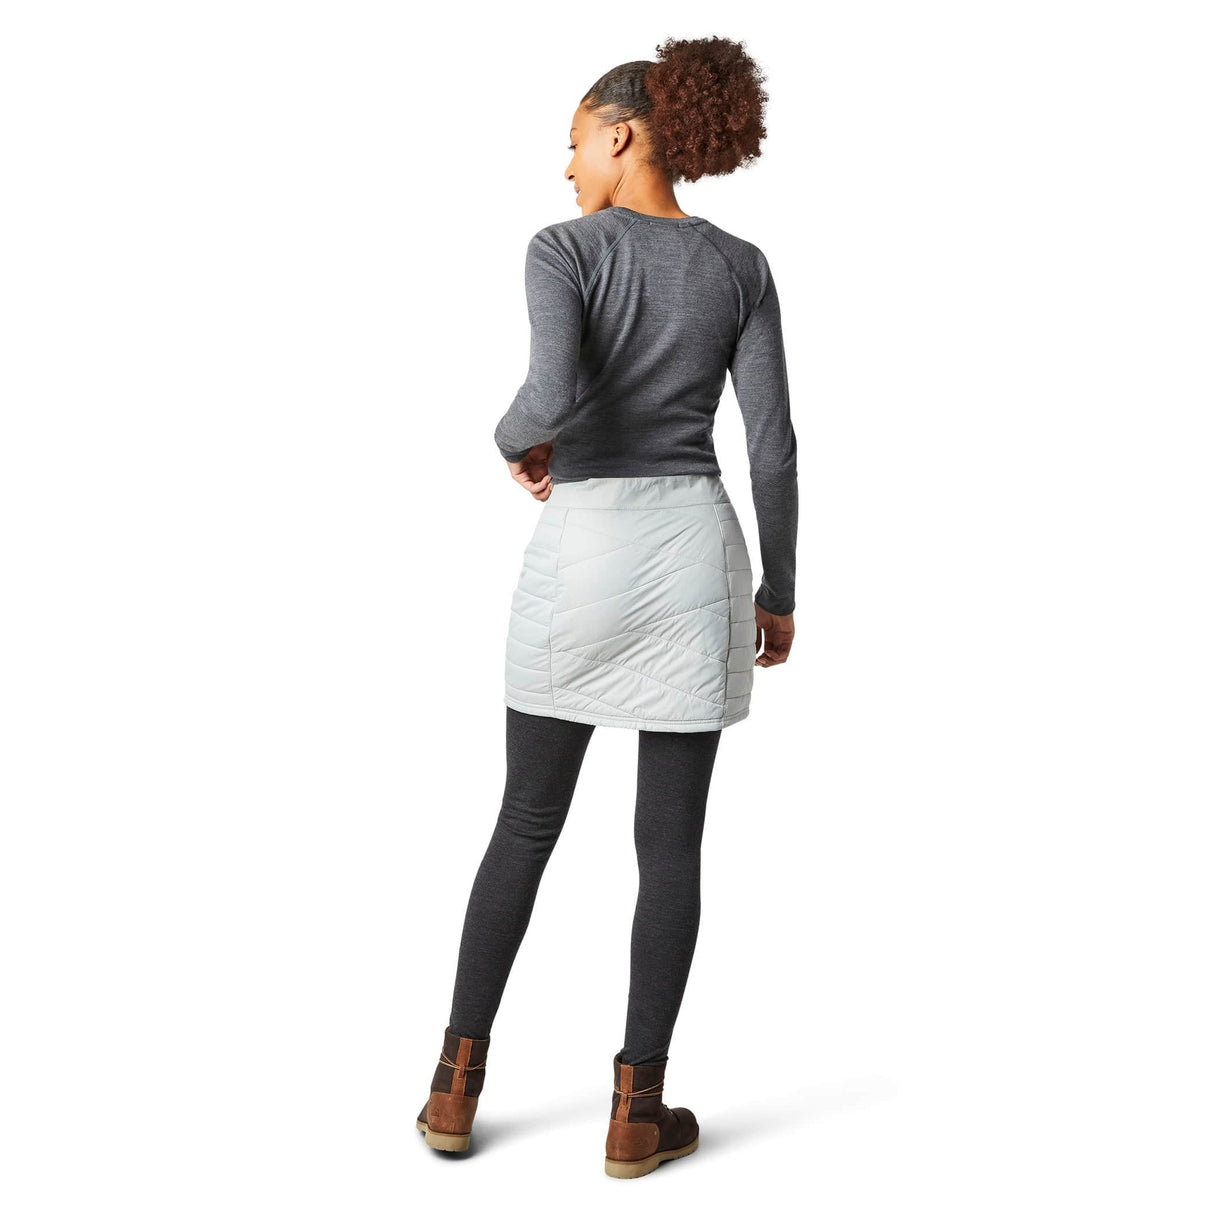 Smartwool Womens Smartloft Zip Skirt  - 